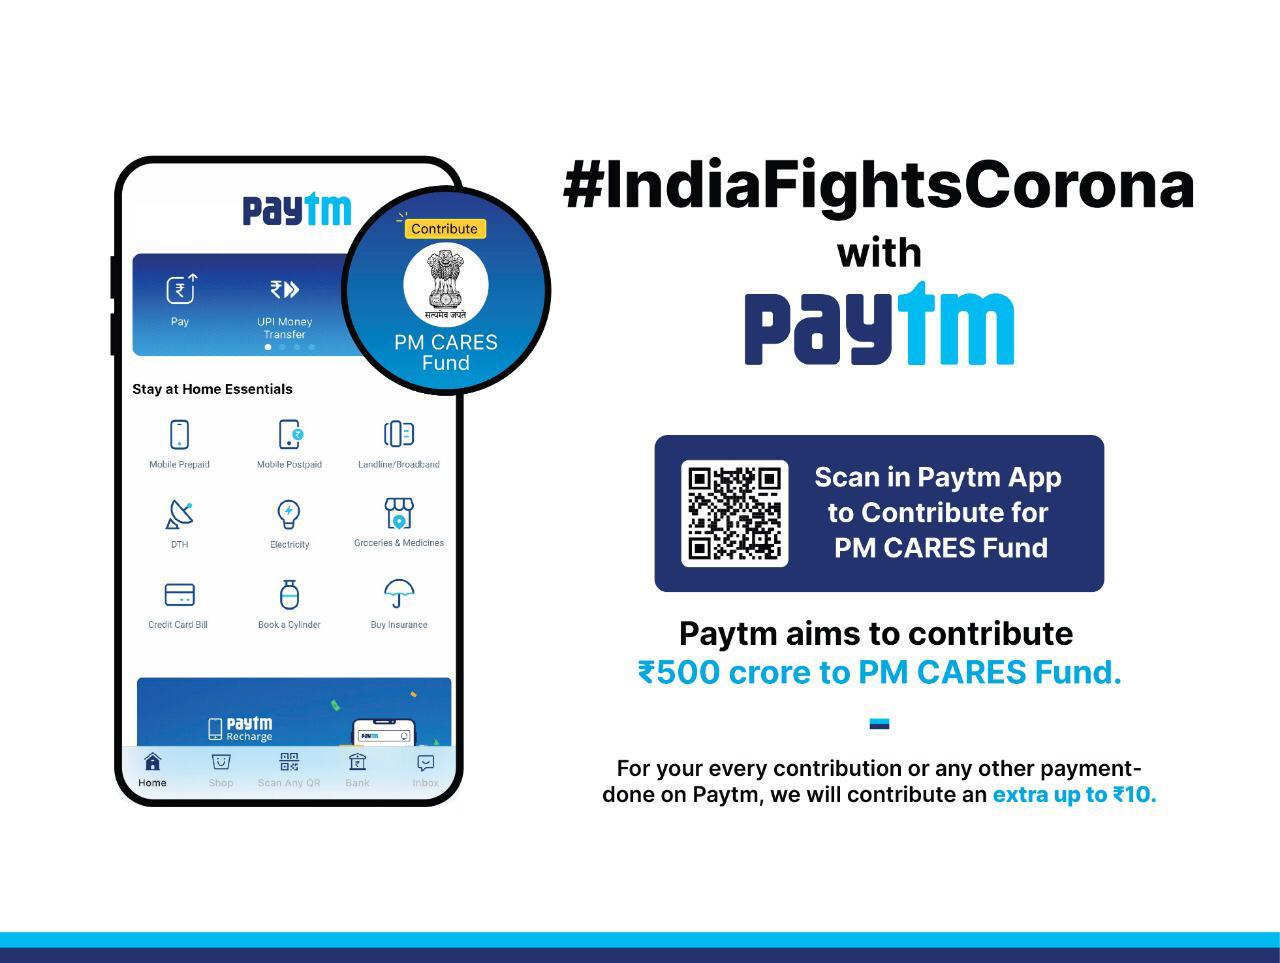 paytm new ui india fights corona